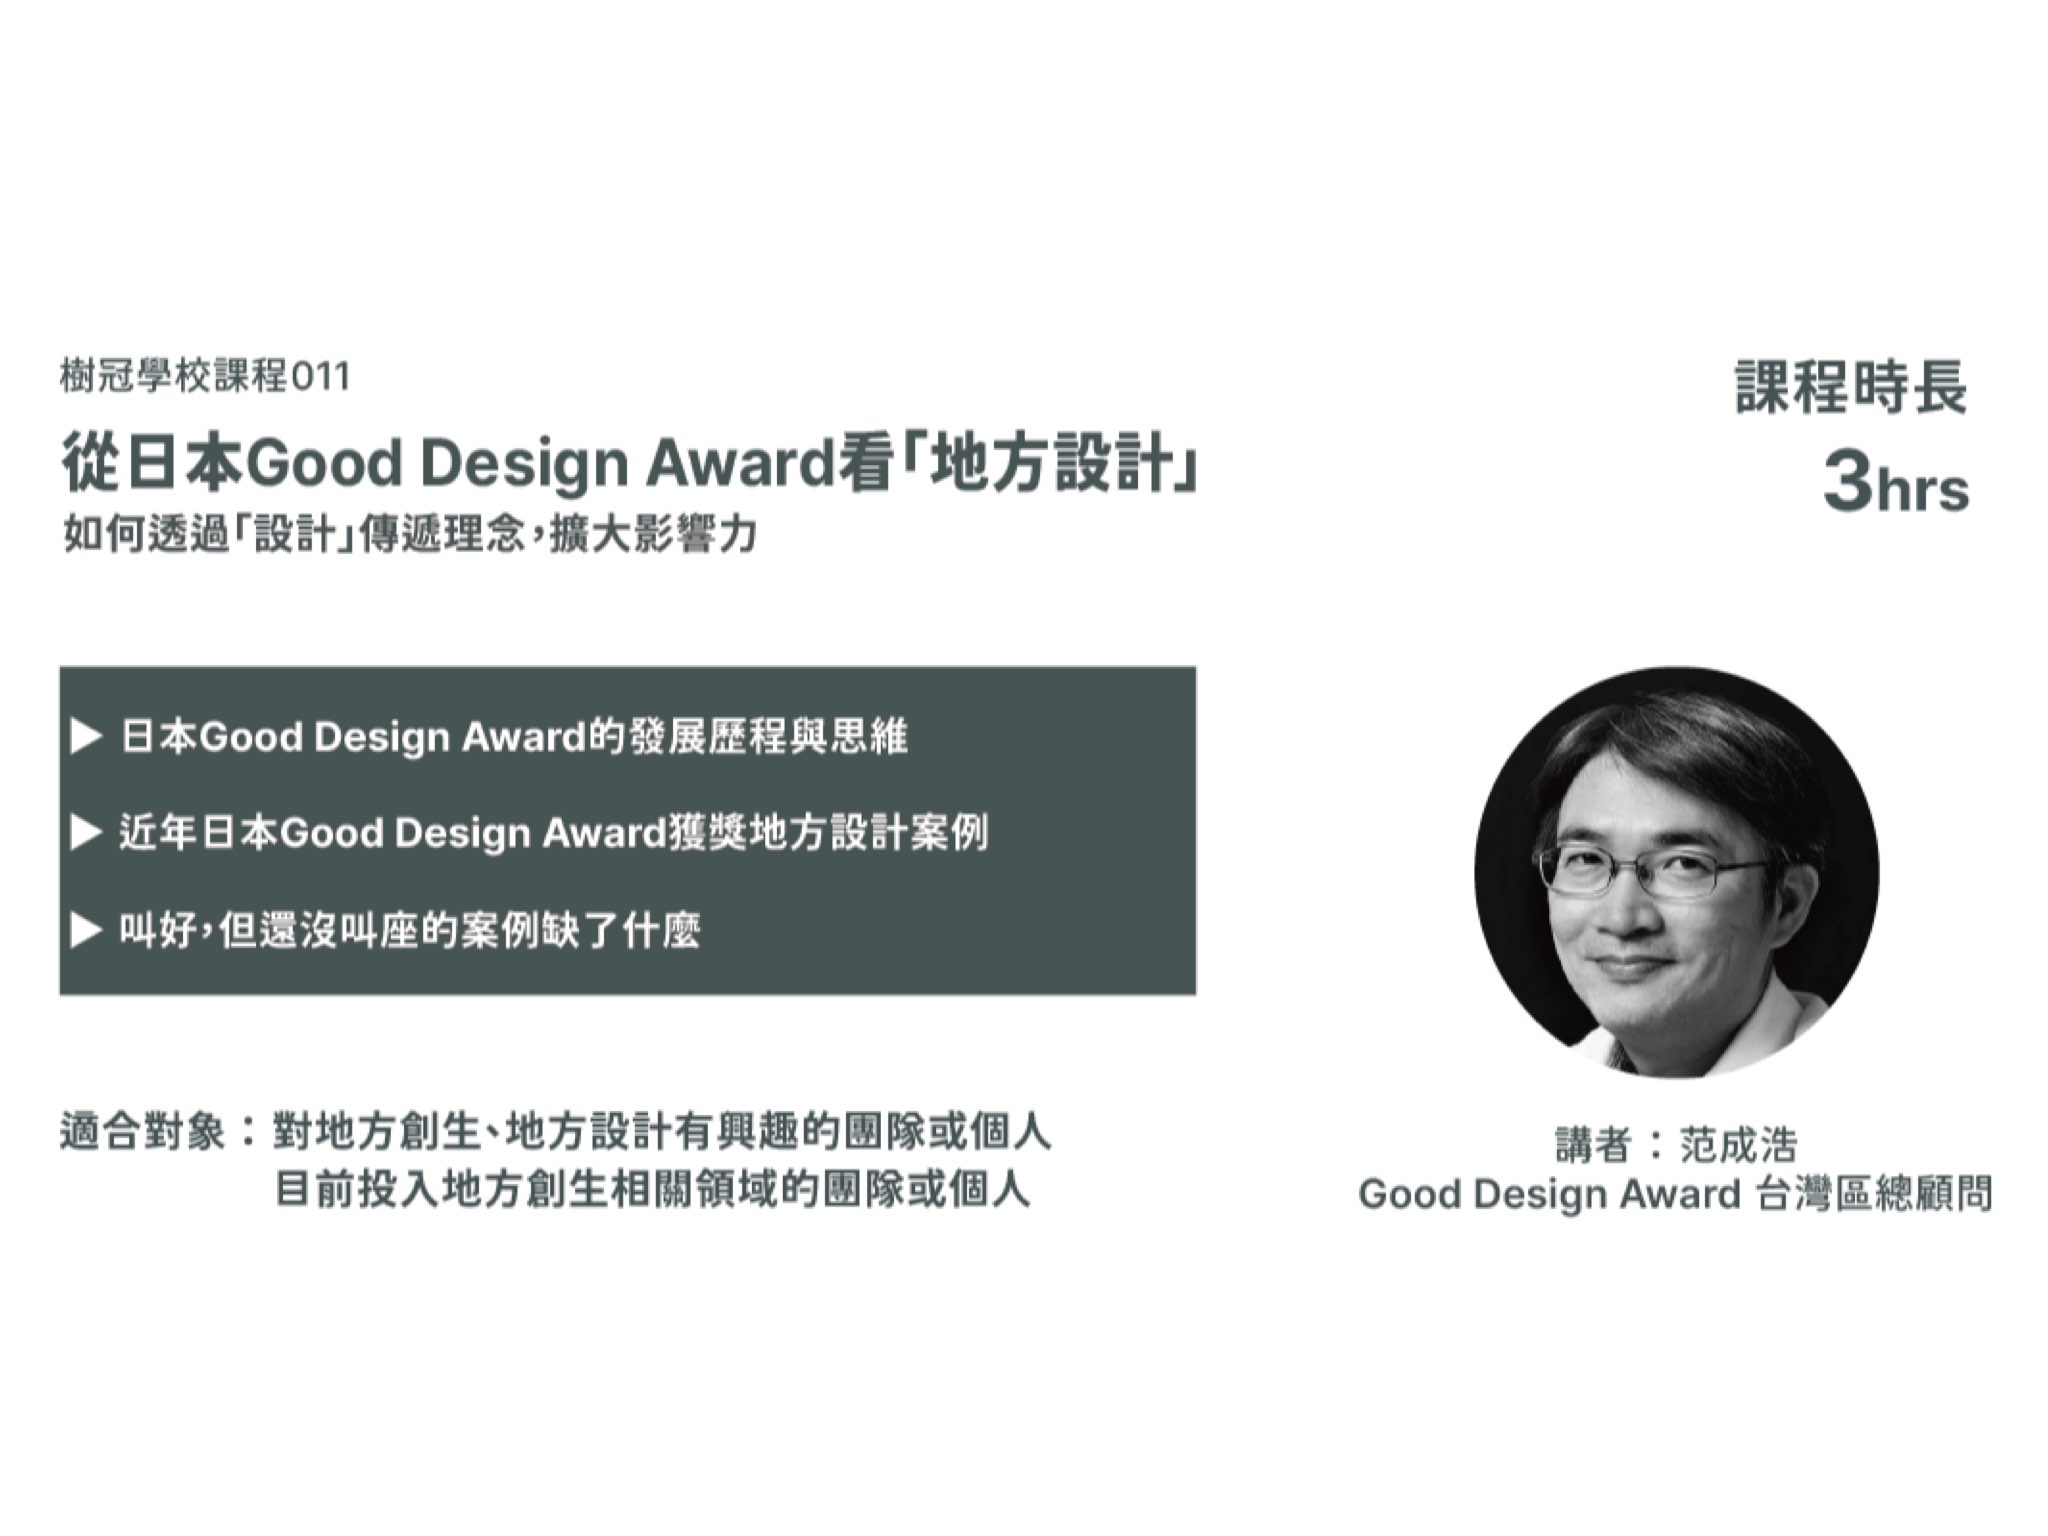 【課程結束】9/15(三)從日本Good Design Award看「地方設計」｜創業技能工作坊